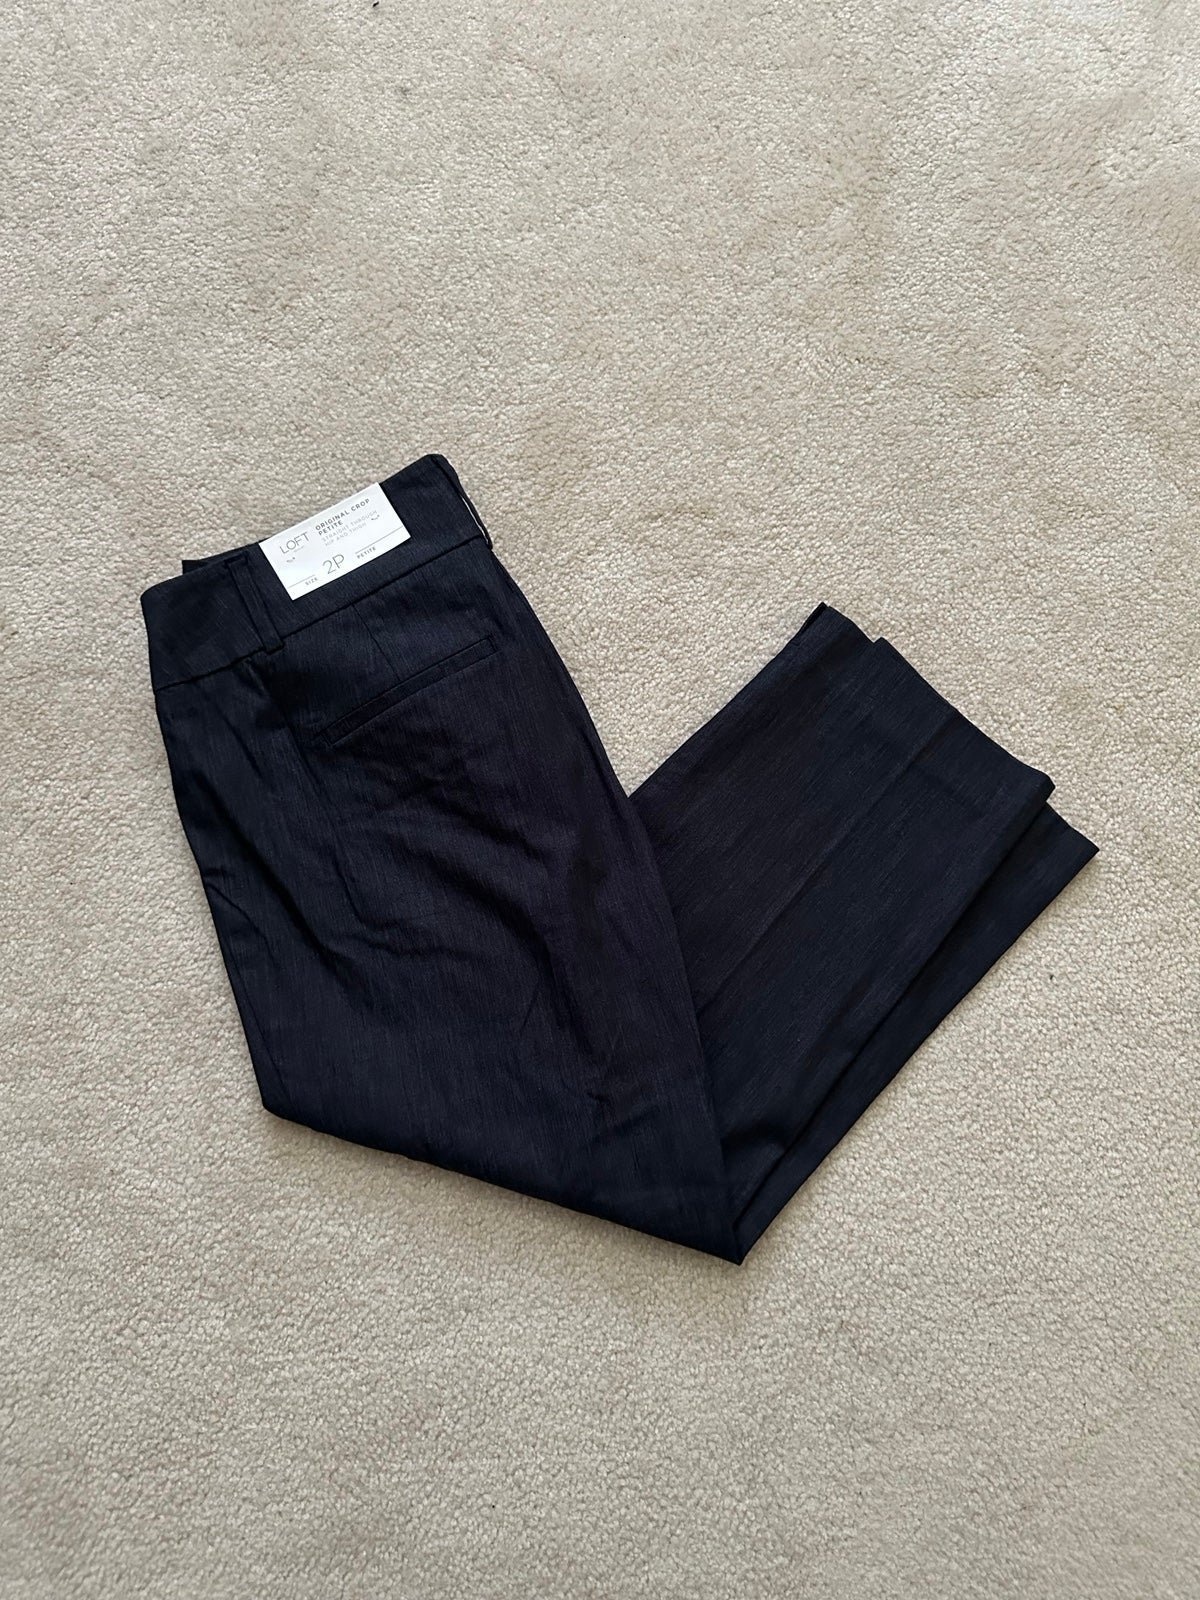 Classic Loft Crop Pants - size 2P H3Xc5MPf1 for sale